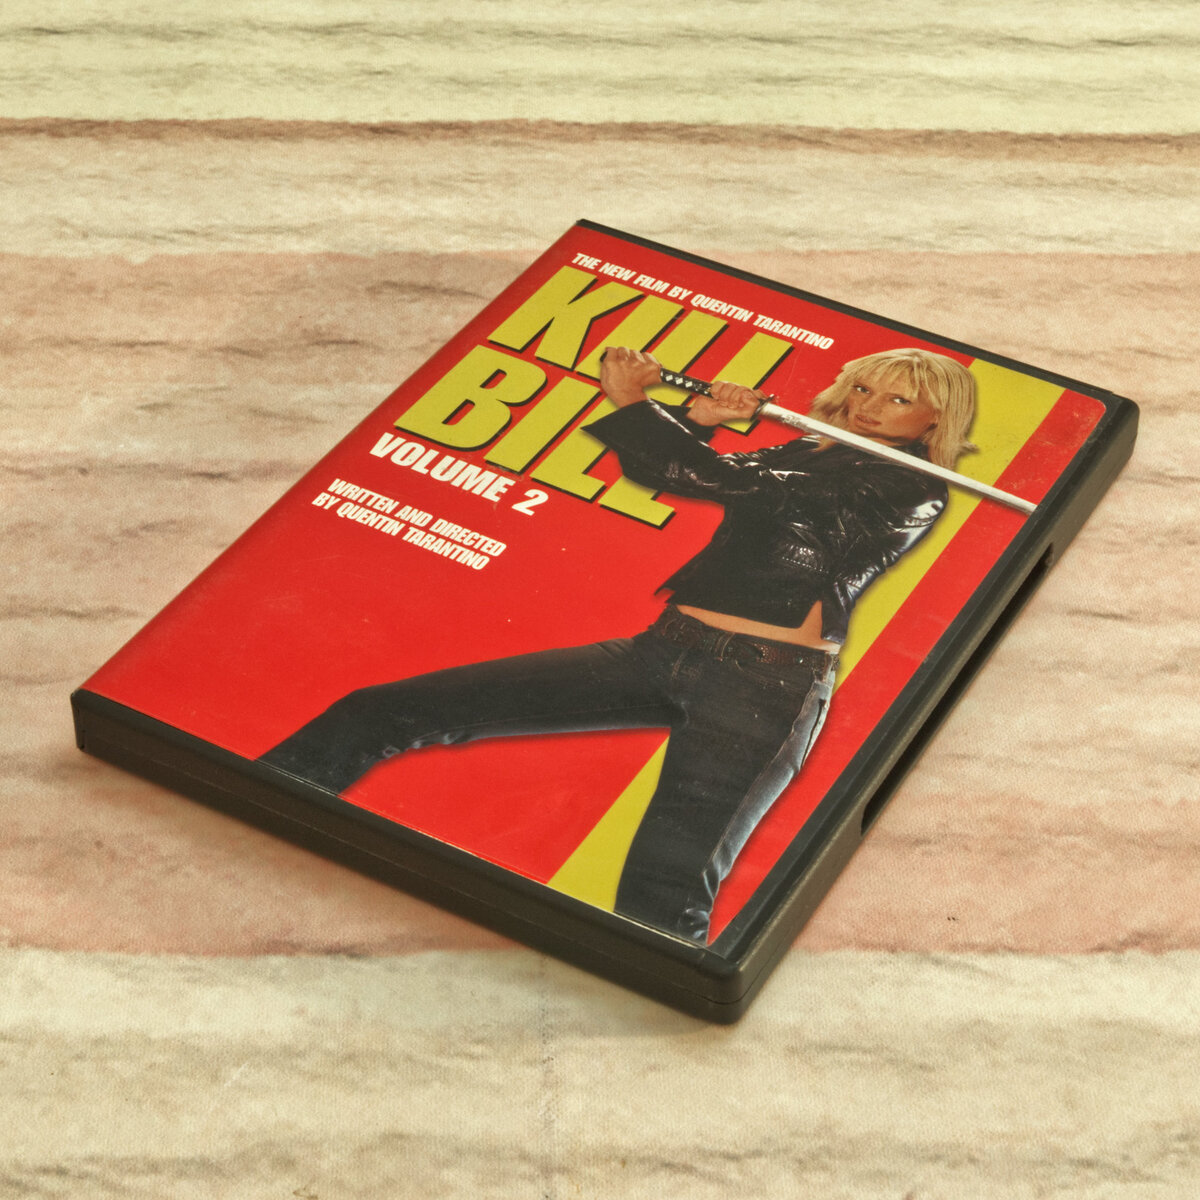 Kill Bill Volume 2 Movie DVD